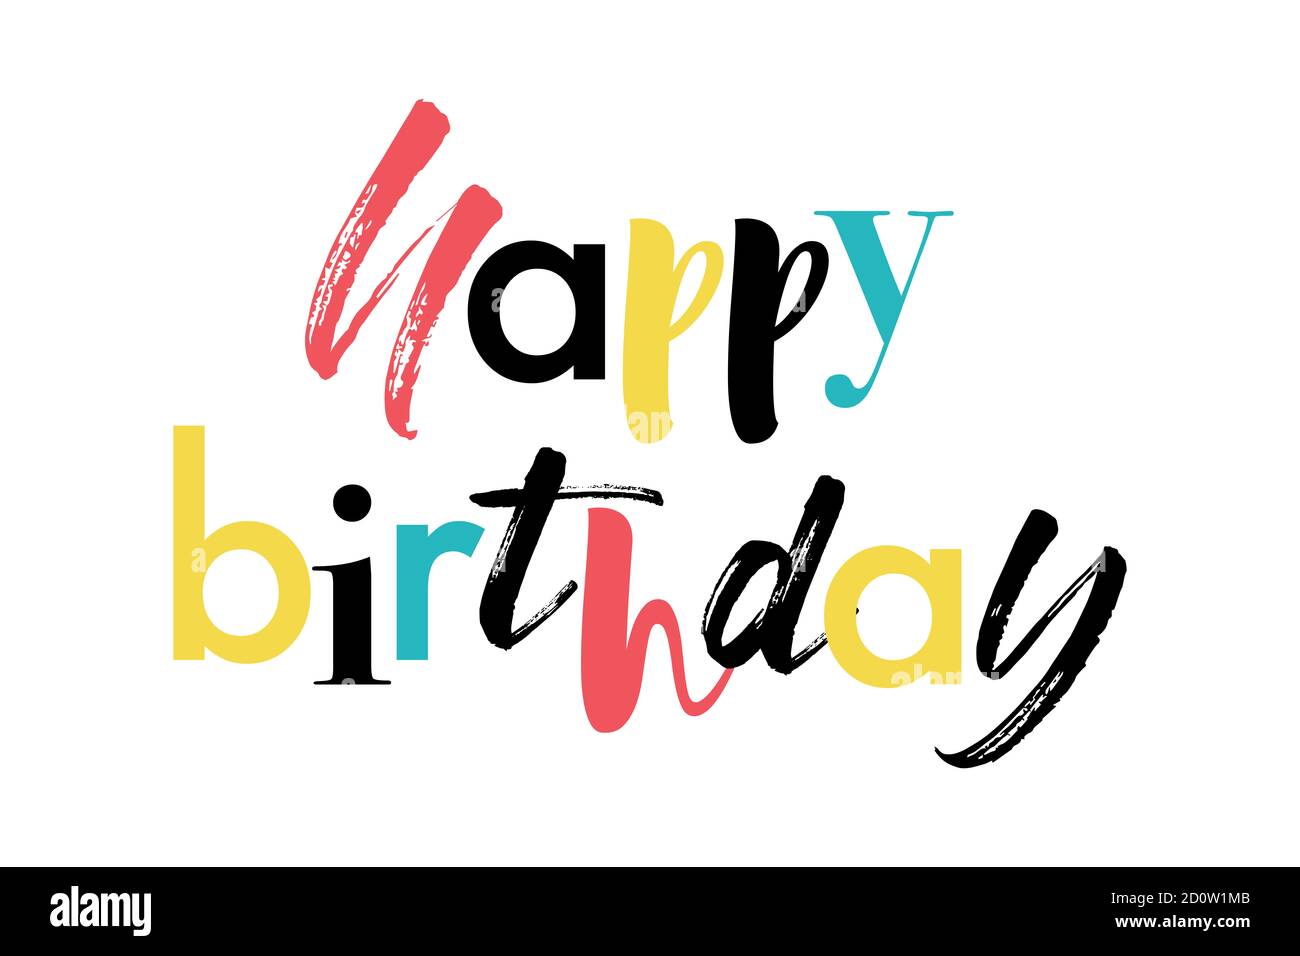 Design grafico moderno, divertente e colorato di un detto 'Happy Birthday' nei colori rosso, giallo, blu e nero. Tipografia creativa. Foto Stock